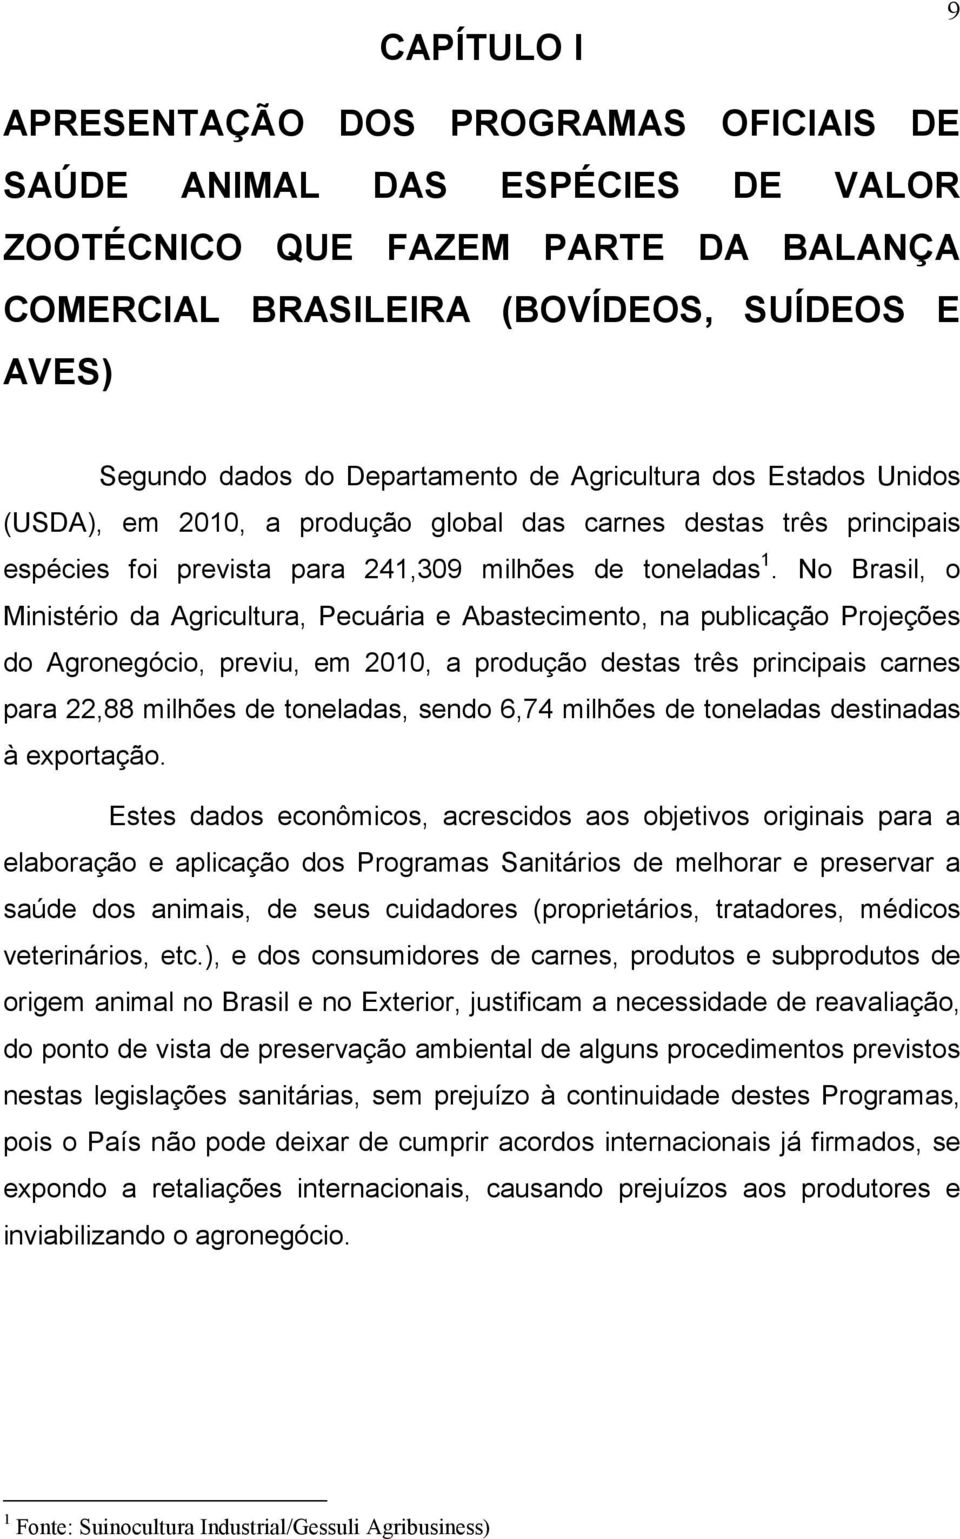 No Brasil, o Ministério da Agricultura, Pecuária e Abastecimento, na publicação Projeções do Agronegócio, previu, em 2010, a produção destas três principais carnes para 22,88 milhões de toneladas,